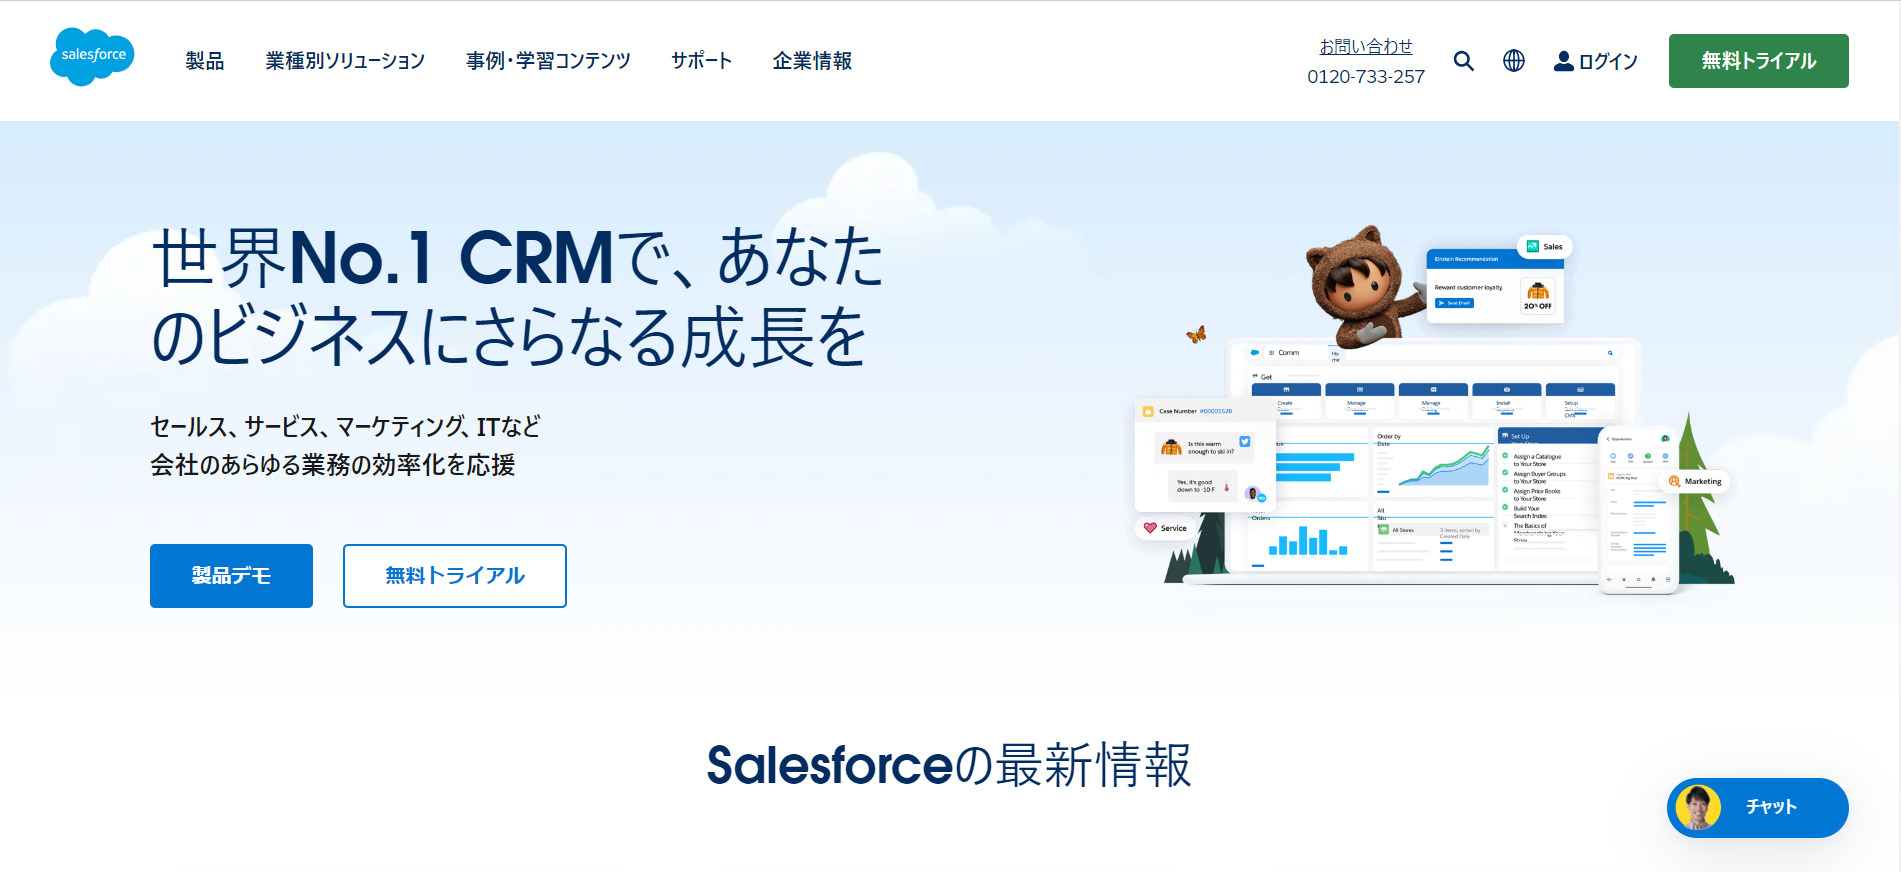 Salesforceのトップページ